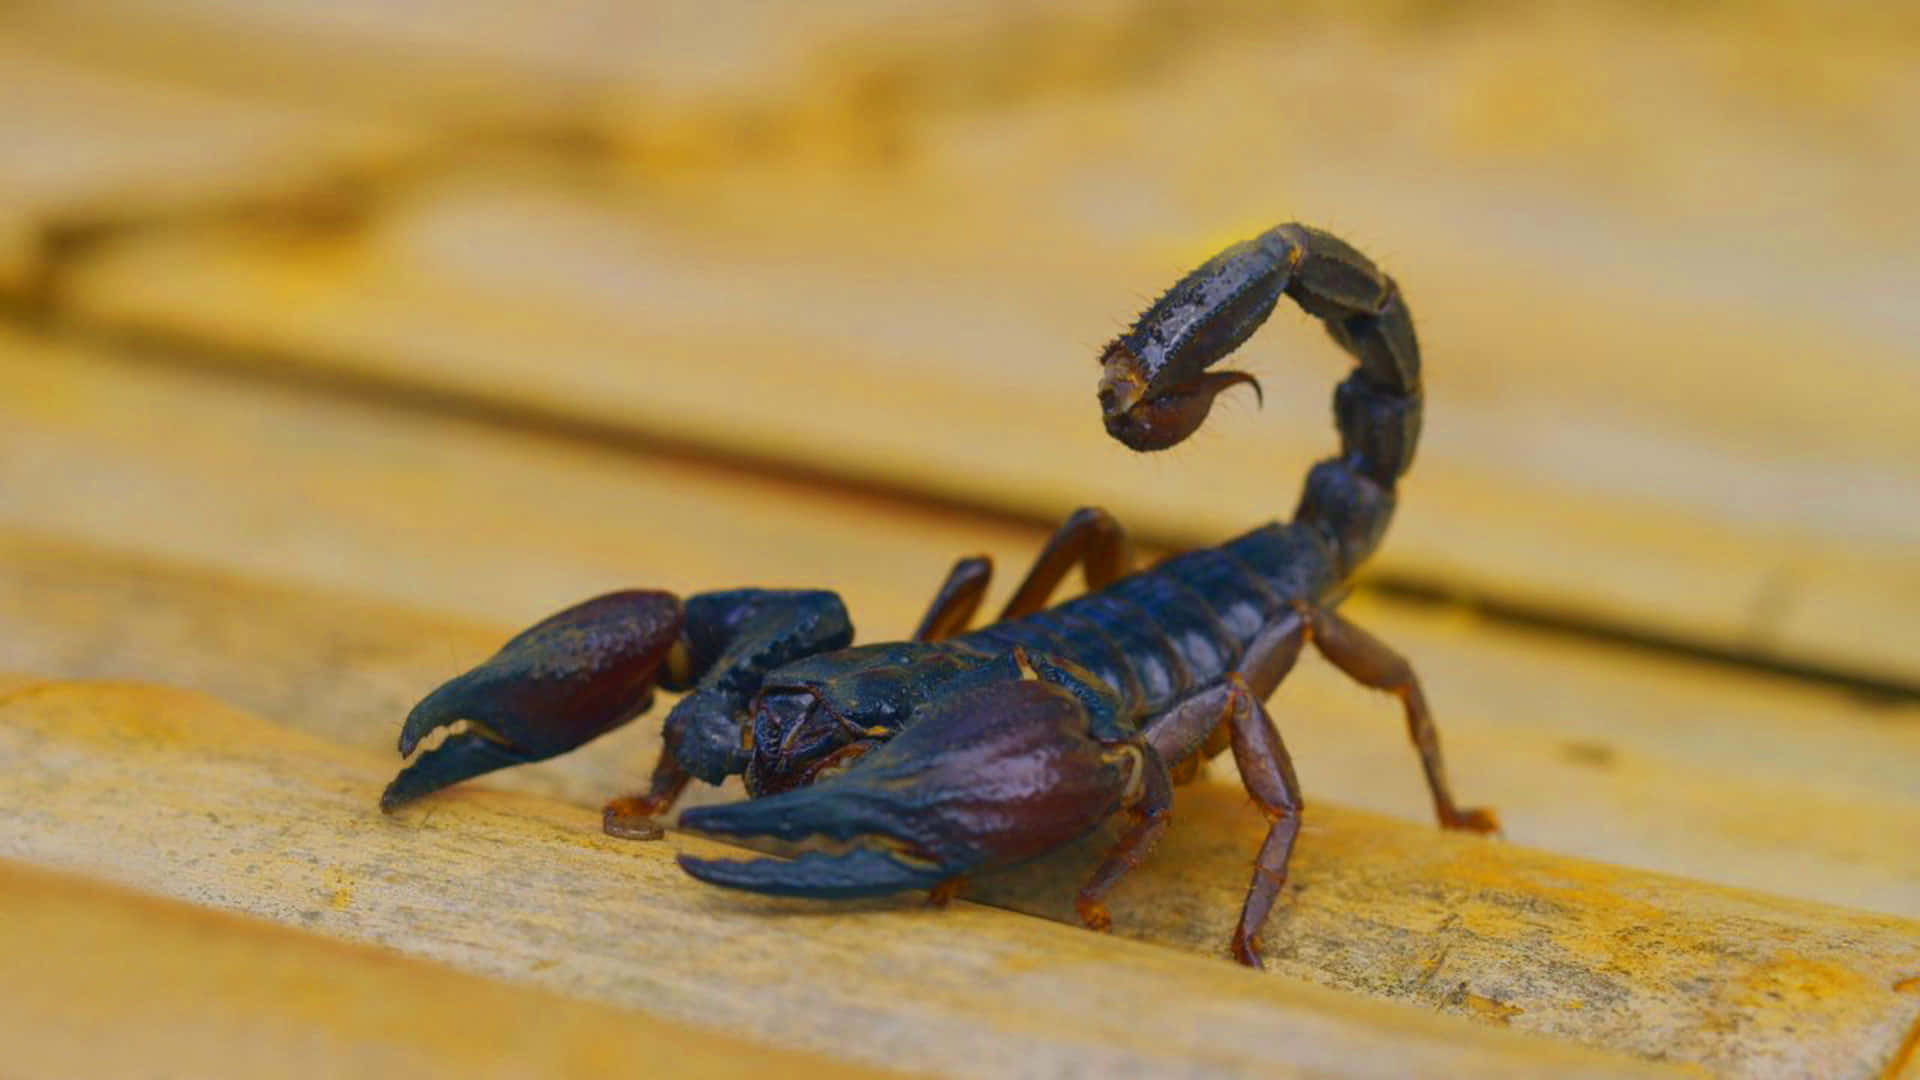 Dieserfurchteinflößende Skorpion Ist Ein Zeugnis Für Die Widerstandsfähigkeit Der Natur.